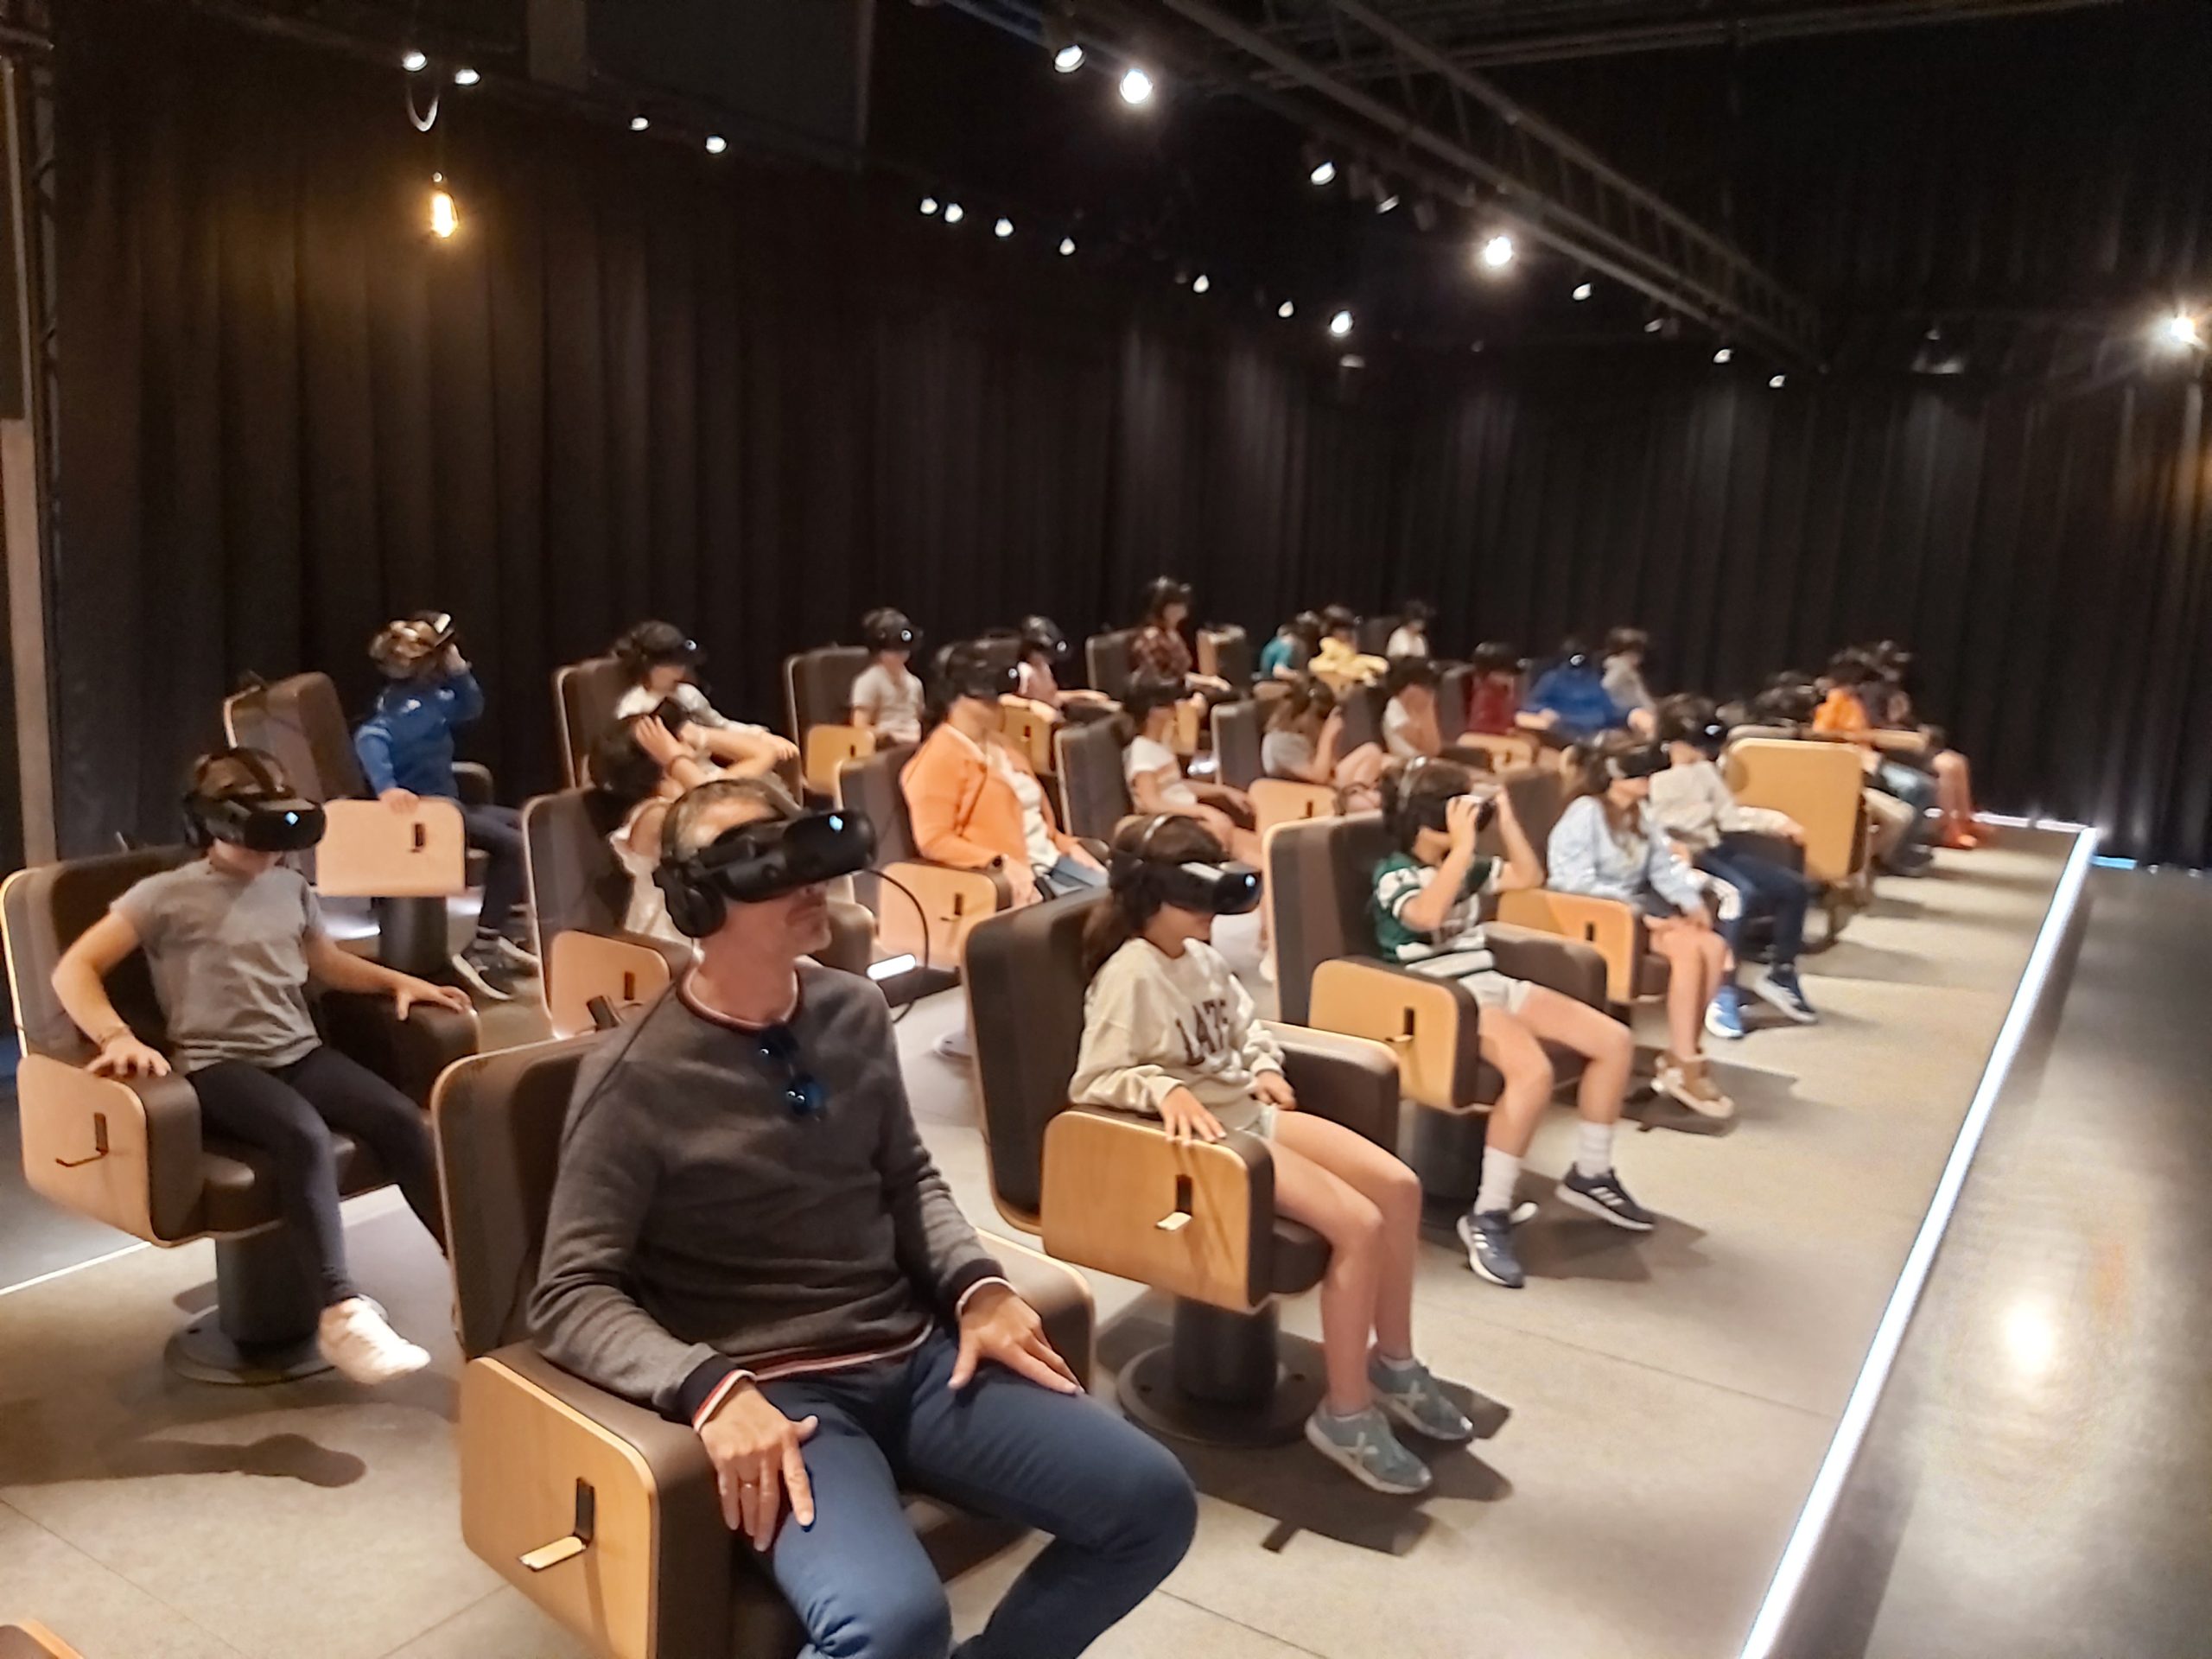 Descubriendo la realidad virtual en el CaixaForum